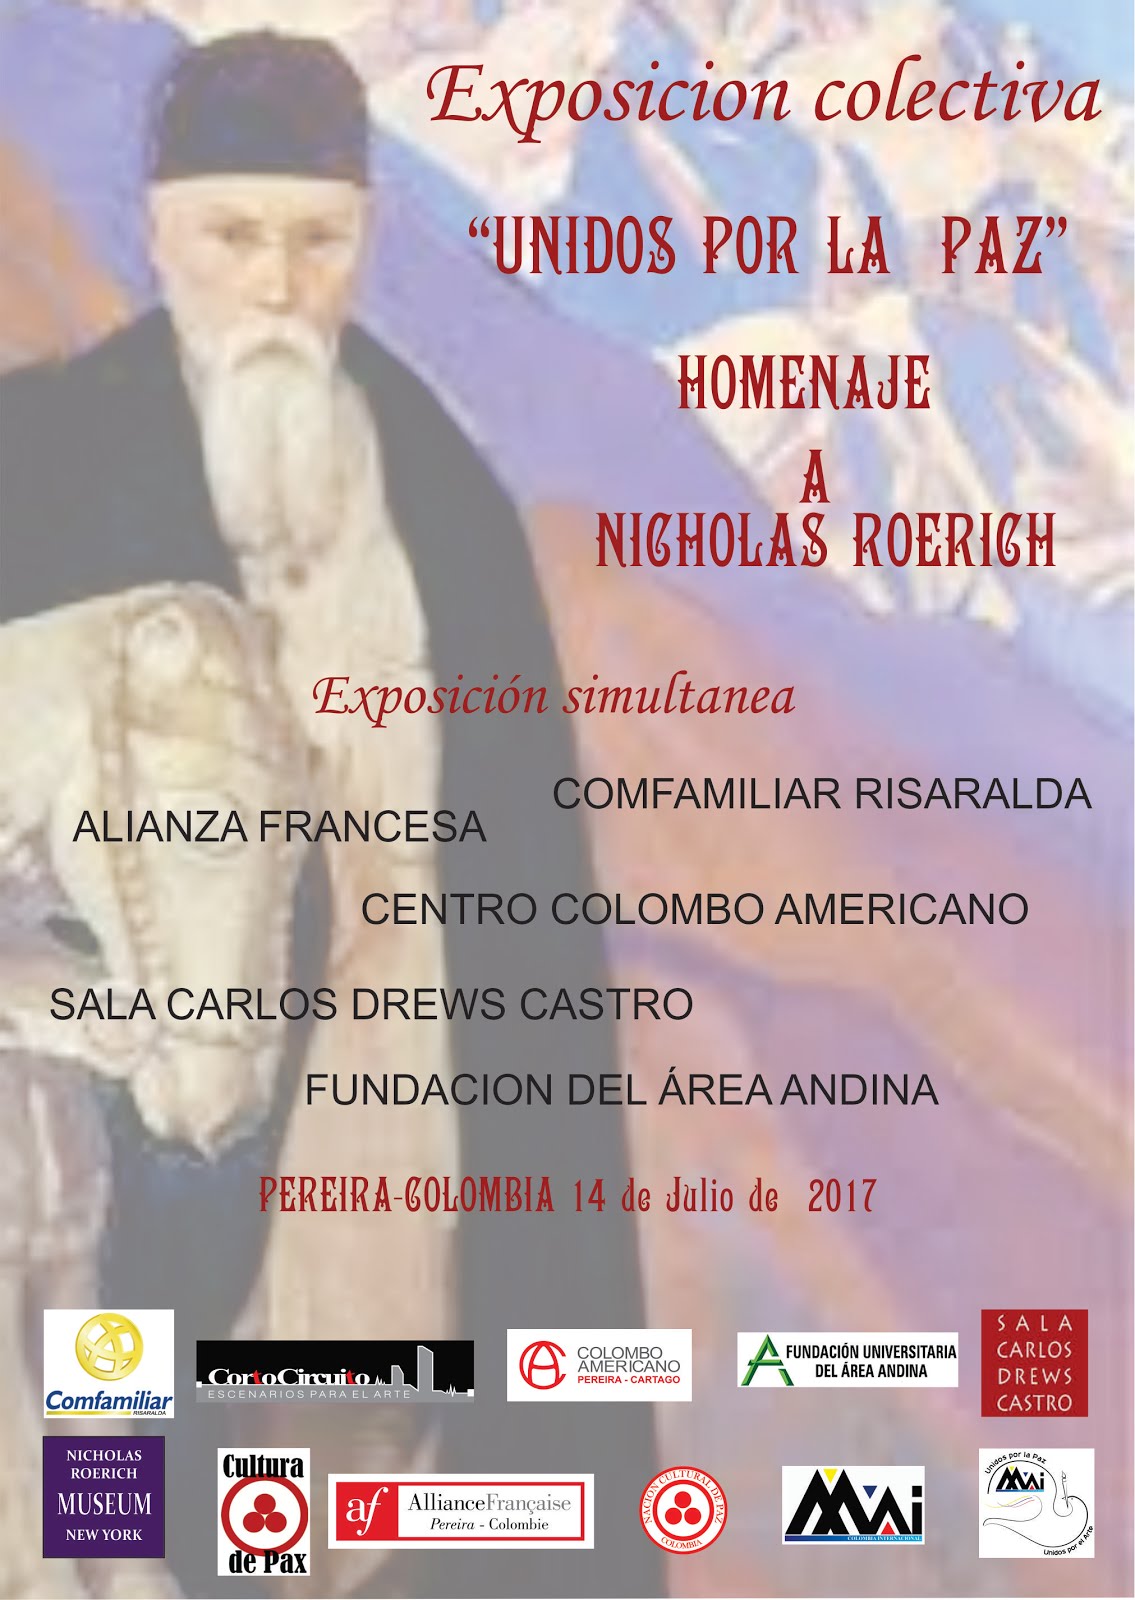 Exposición "Unidos por la Paz", Homenaje a Nicholas Roerich